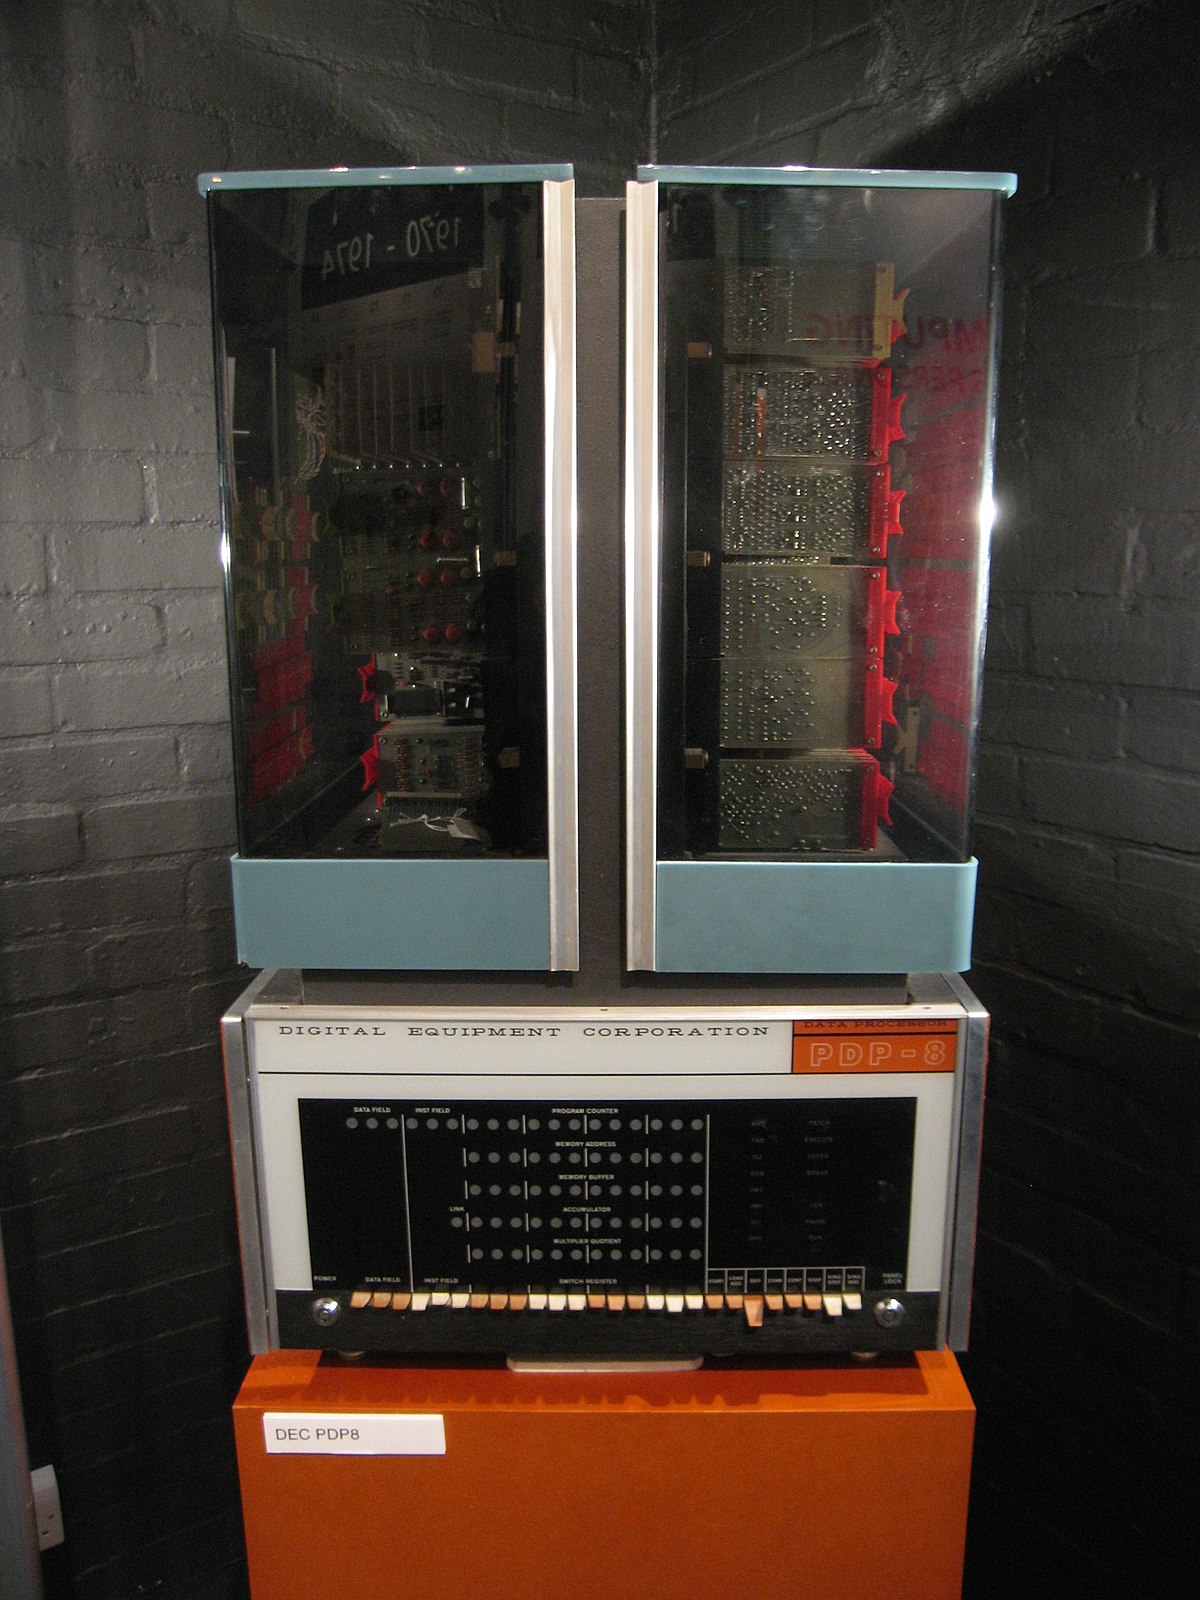 PDP-10 - Wikipedia